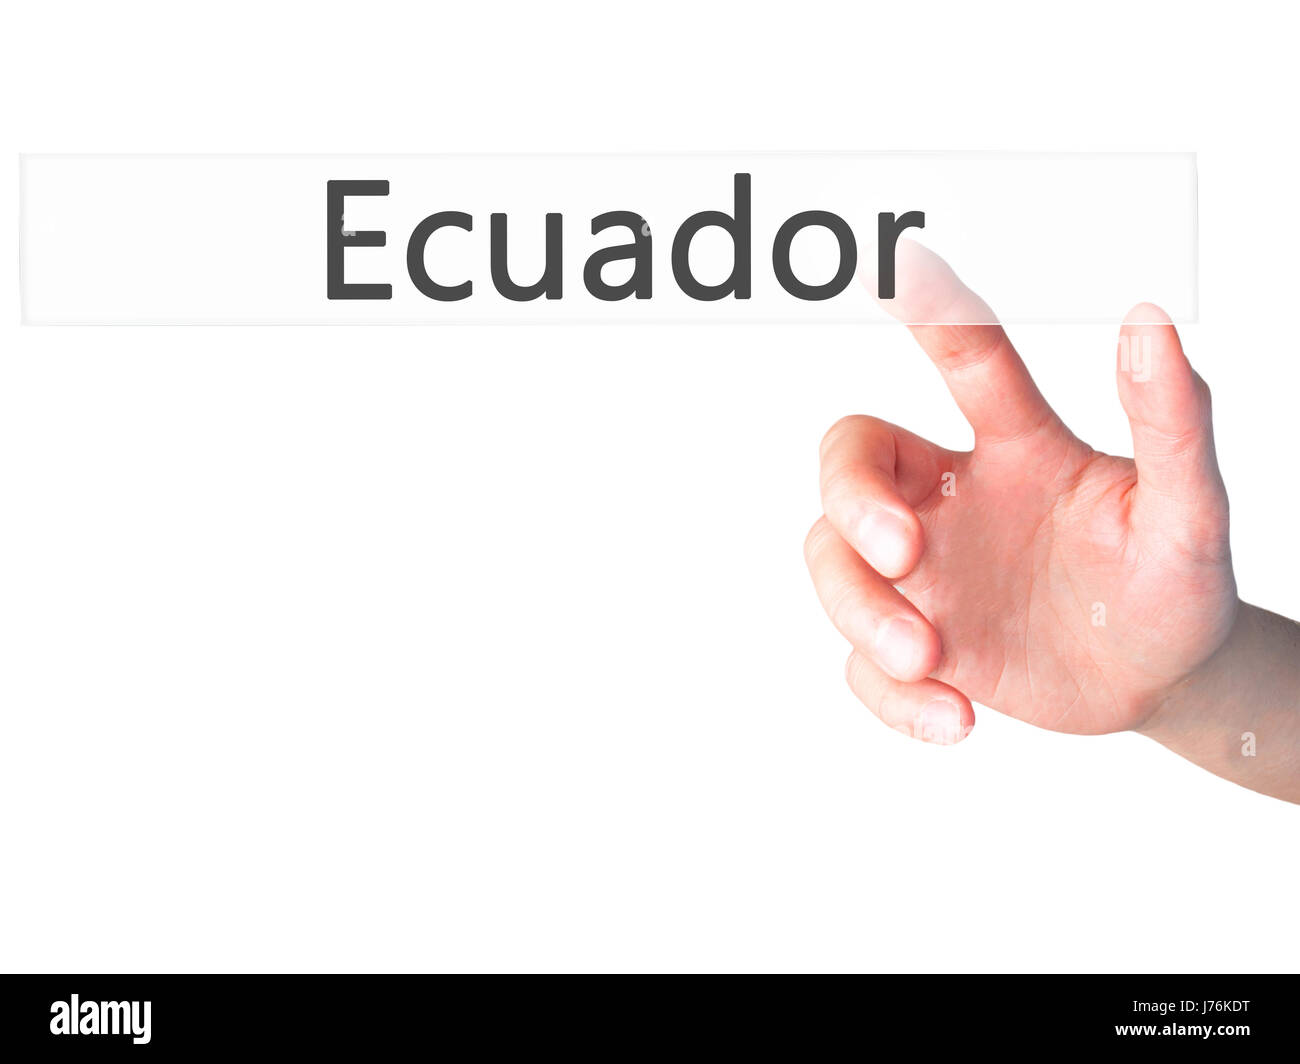 Ecuador - Hand drücken einer Taste auf unscharfen Hintergrund Konzept. Wirtschaft, Technologie, Internet-Konzept. Stock Foto Stockfoto